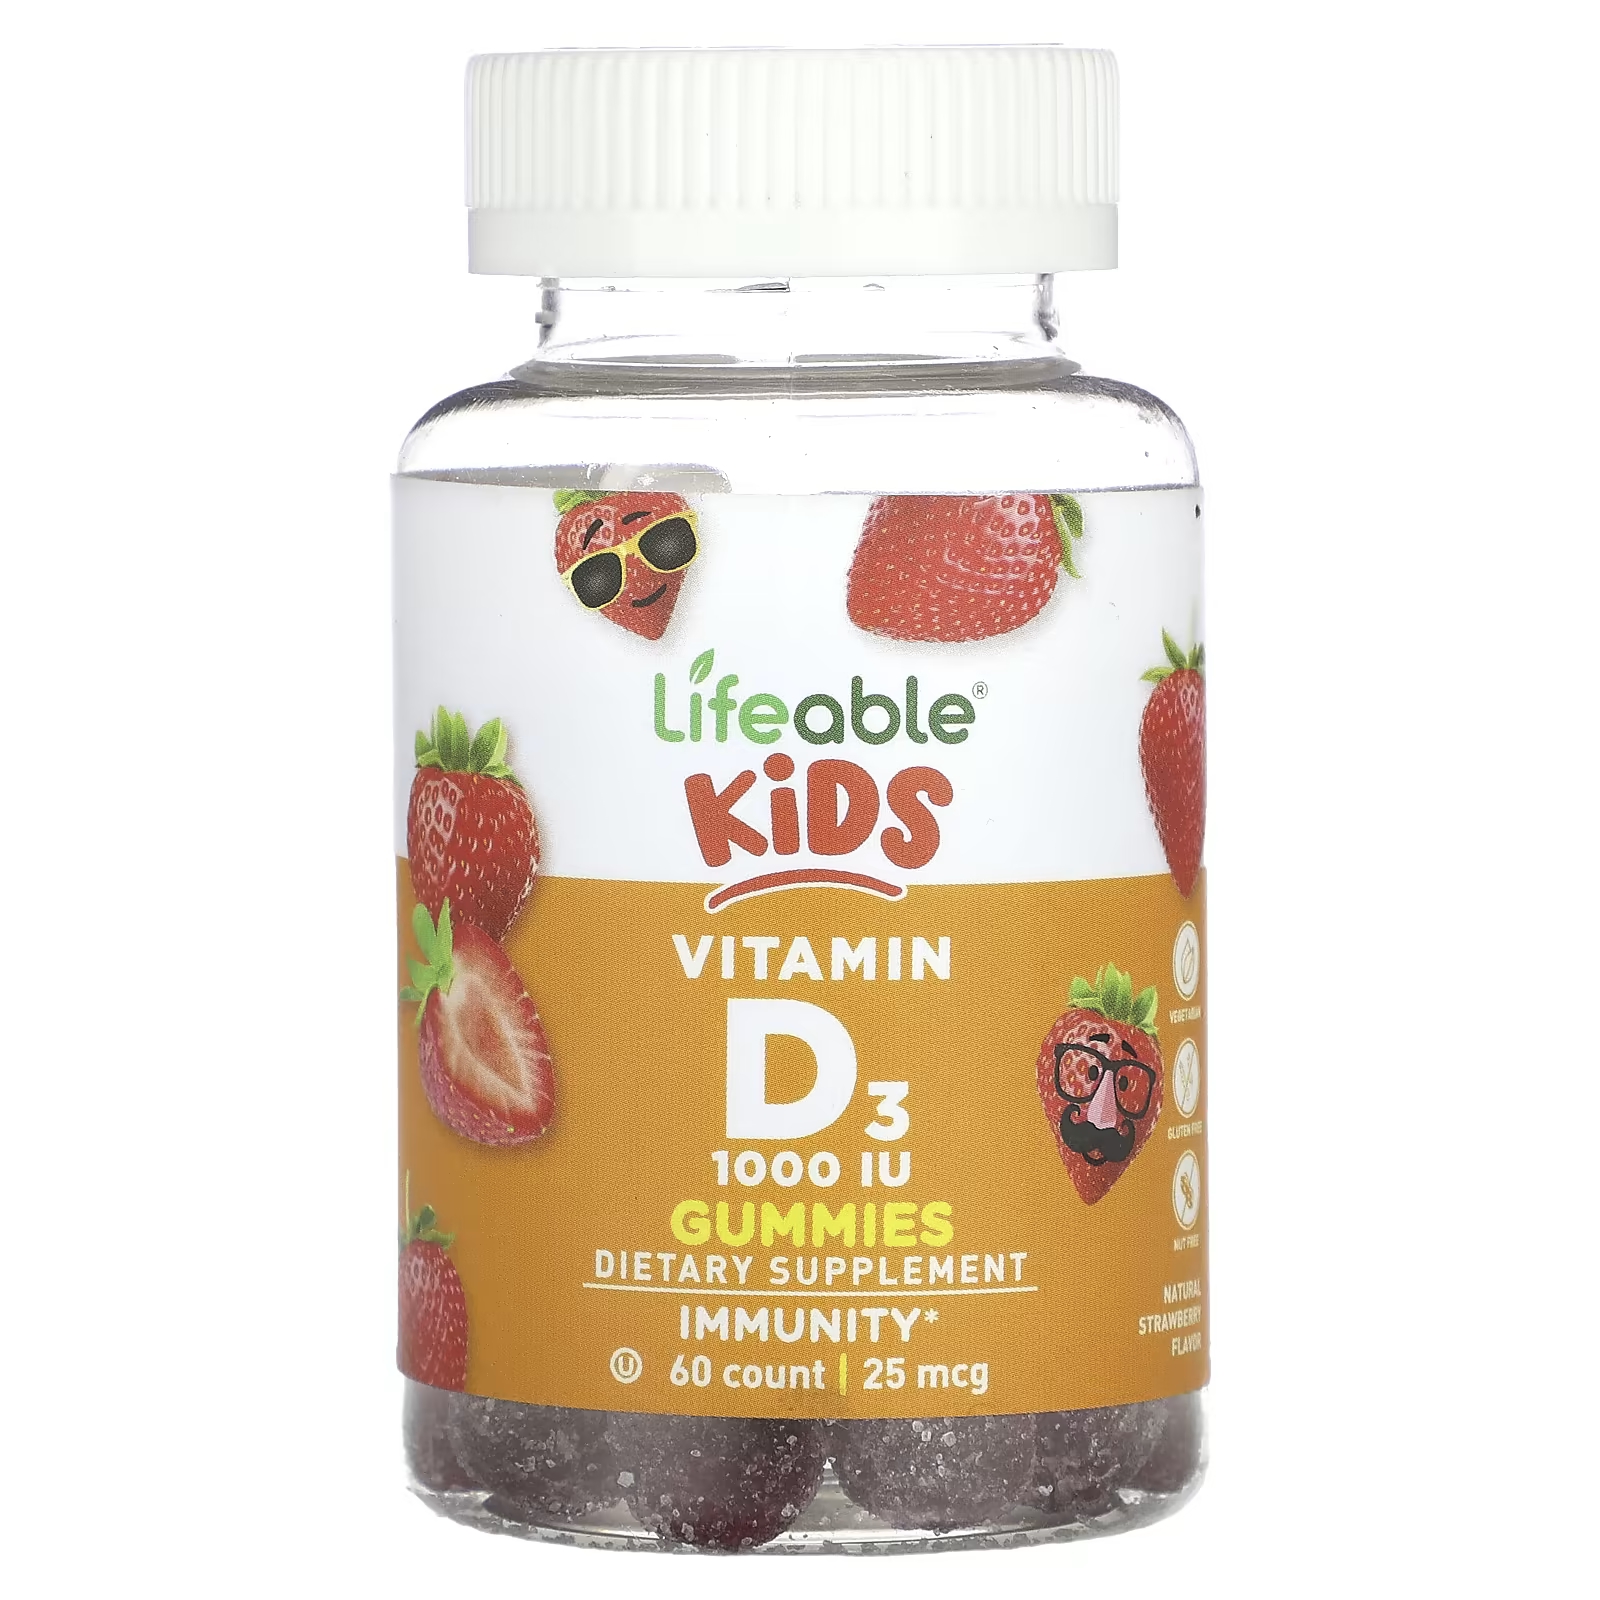 Жевательные конфеты Lifeable Kids с витамином D3, 60 жевательных таблеток жевательные конфеты lifeable kids с пребиотическим волокном натуральные ягоды 60 жевательных конфет